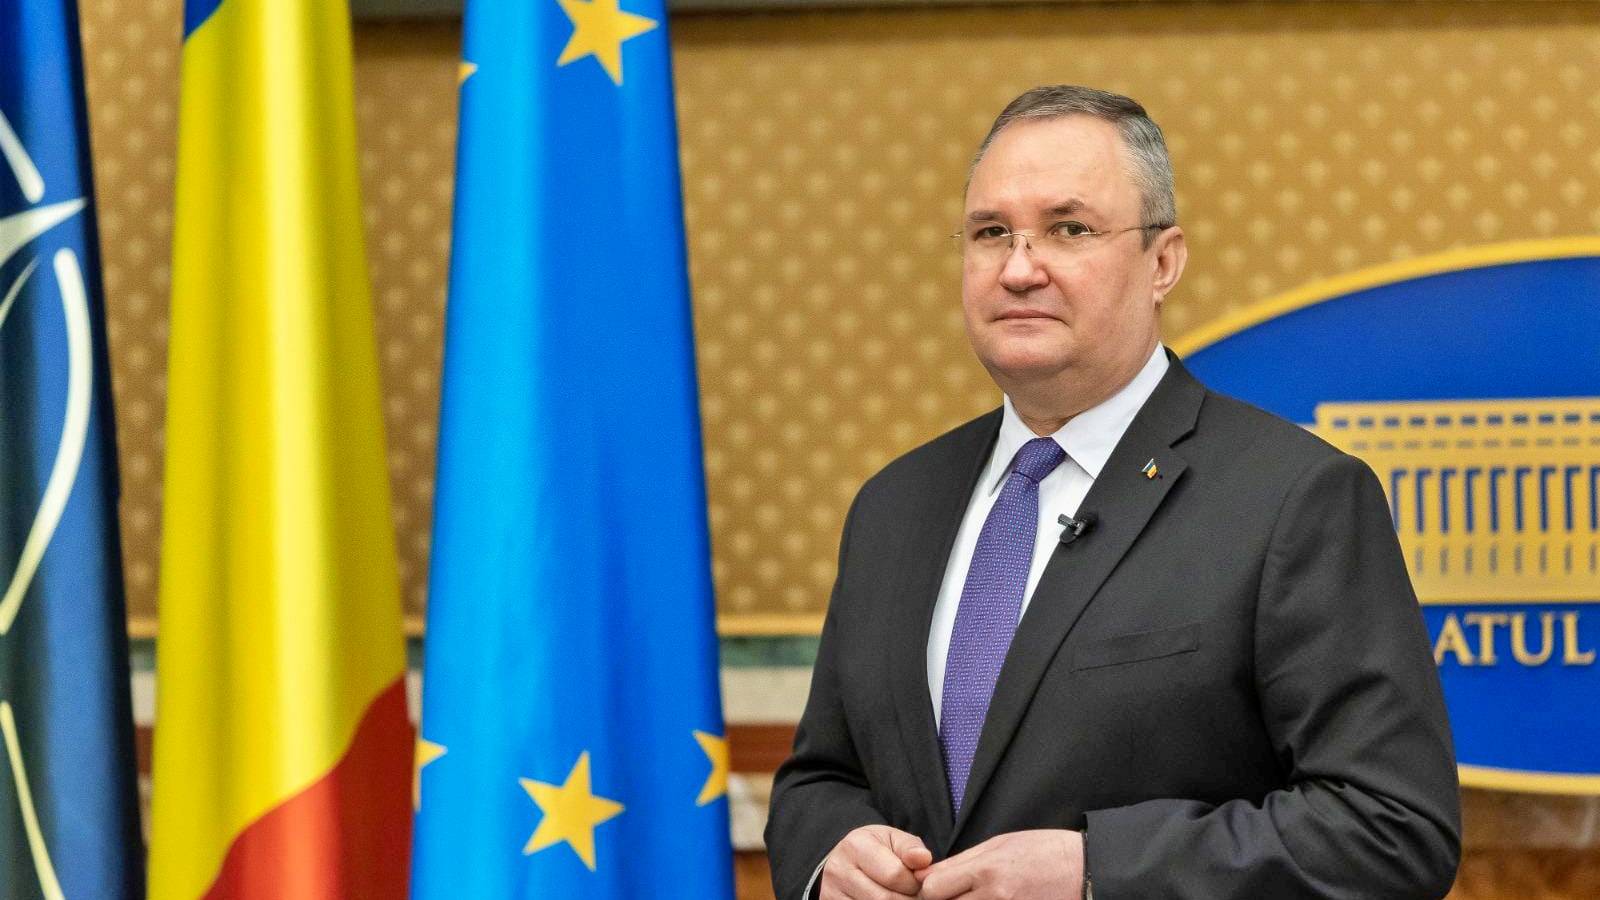 Nicolae Ciuca Anunt Privind Parteneriatul cu Uniunea Nationala a Consiliilor Judetene din Romania